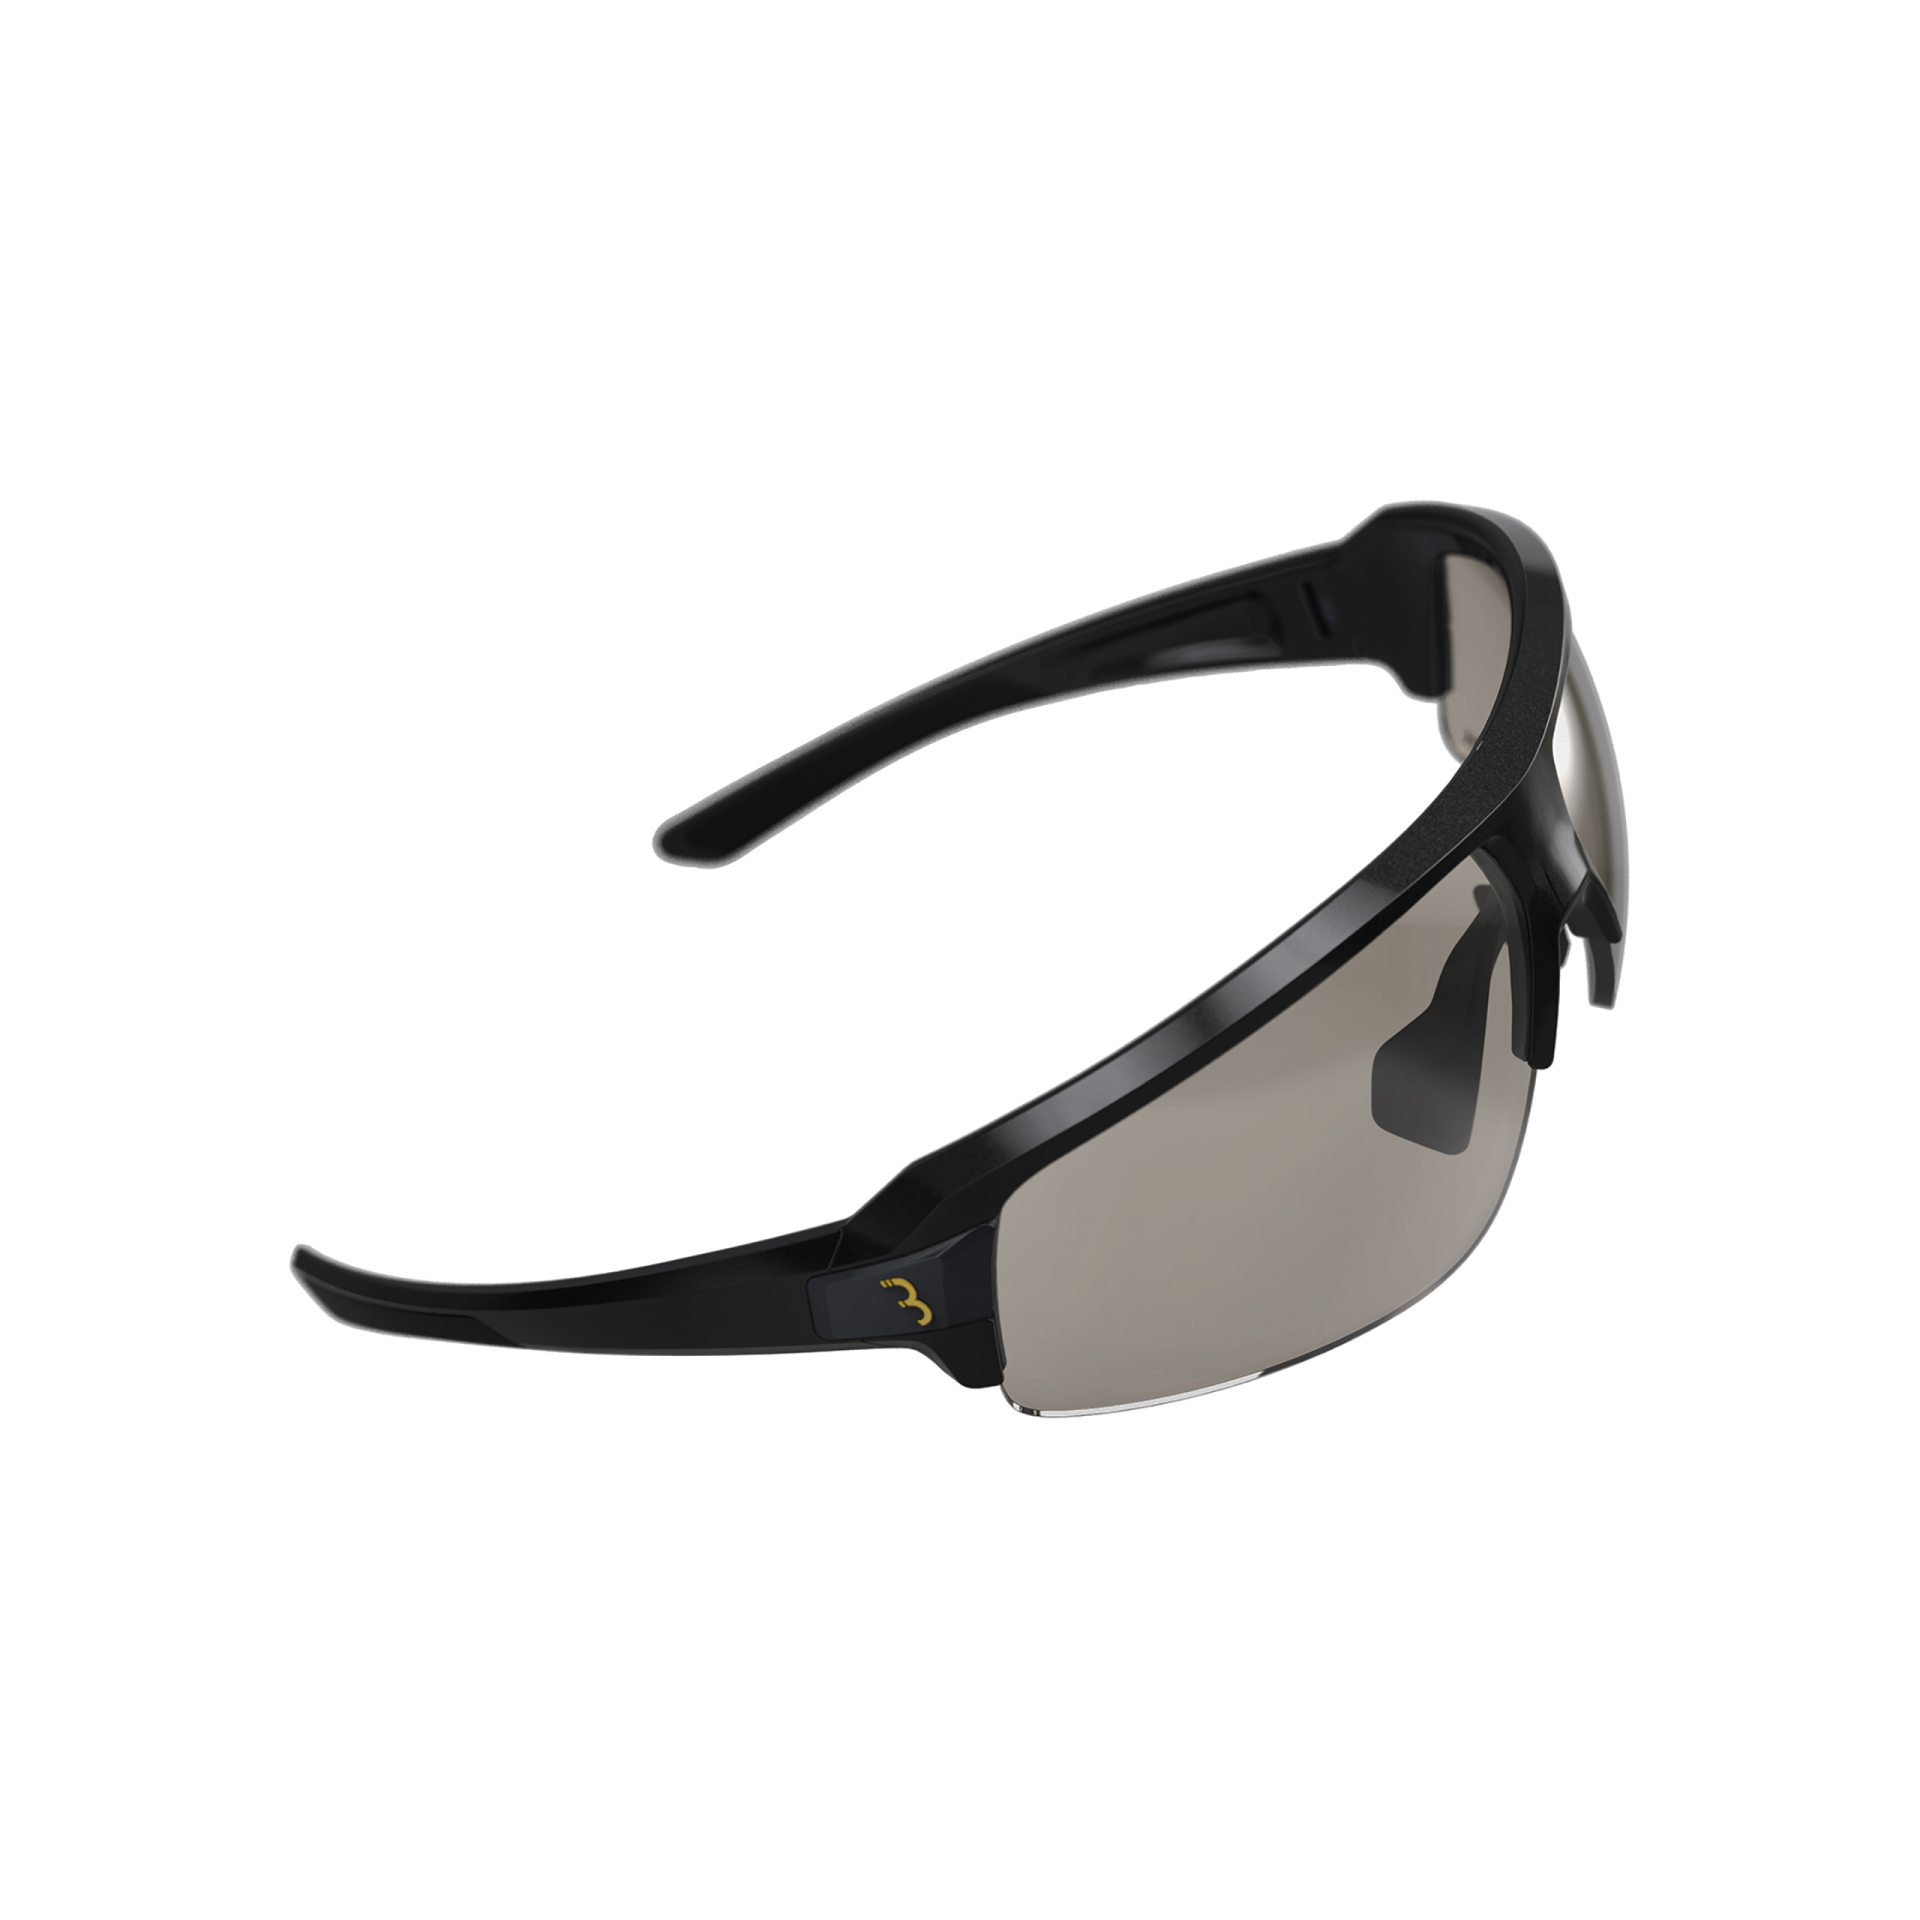 Amsler - Brille Impulse PH, glanz metallic schwar 